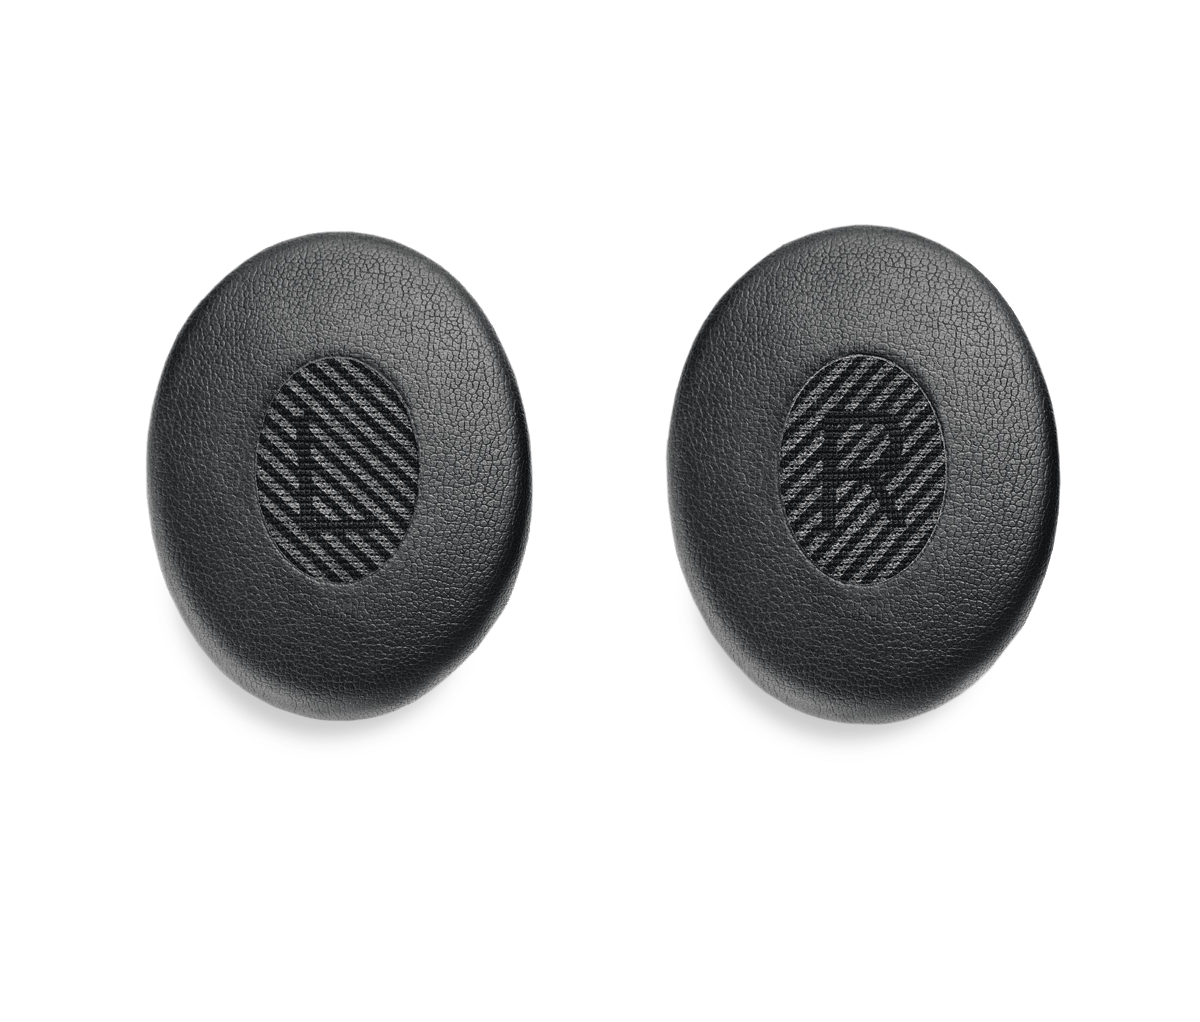 Bose on-ear headphones ear cushion